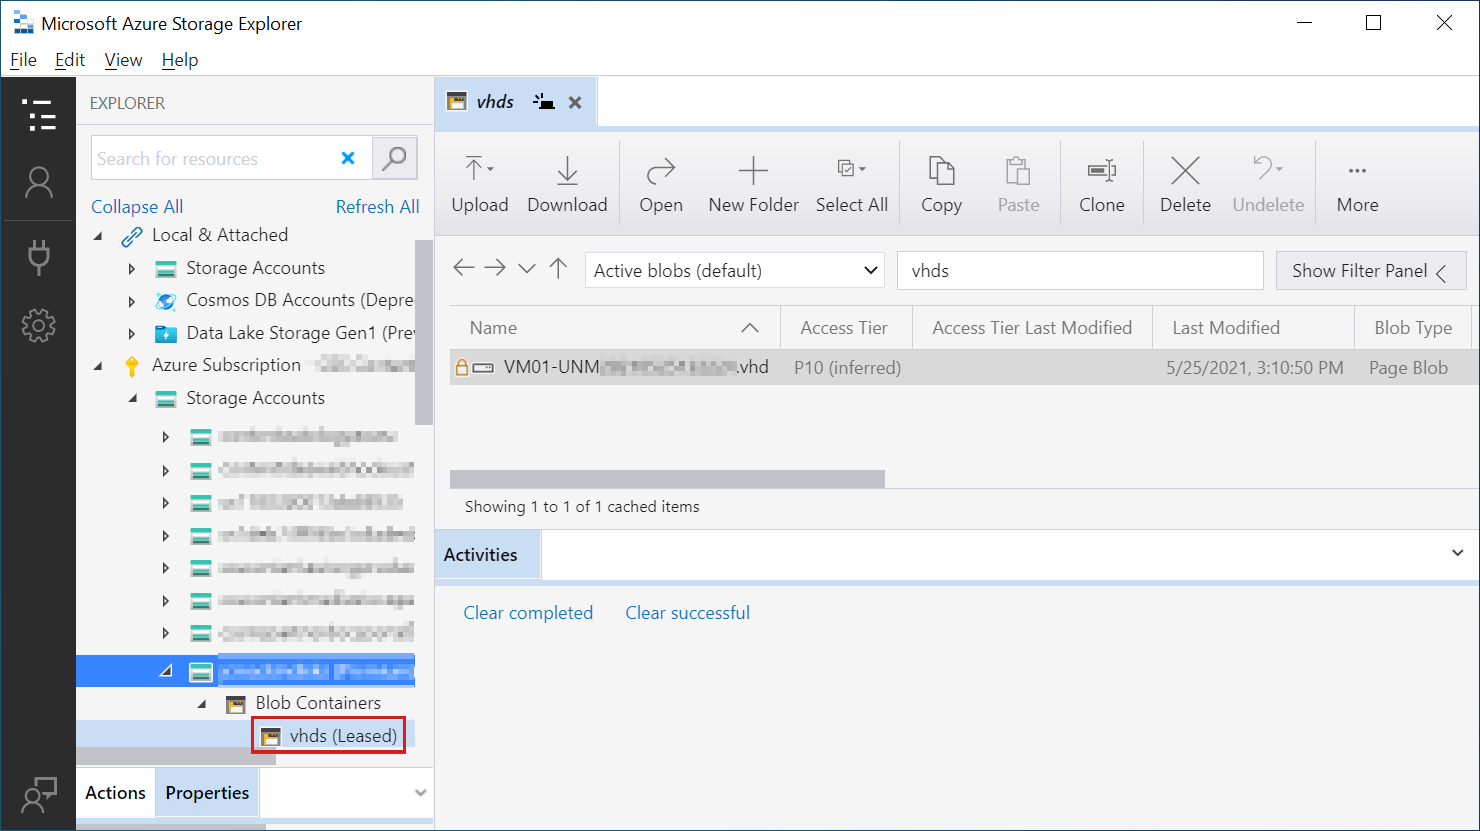 Screenshot di Azure Storage Explorer con il contenitore degli account di archiviazione e il contenitore affittato v h d s entrambi evidenziati nell'albero di spostamento.